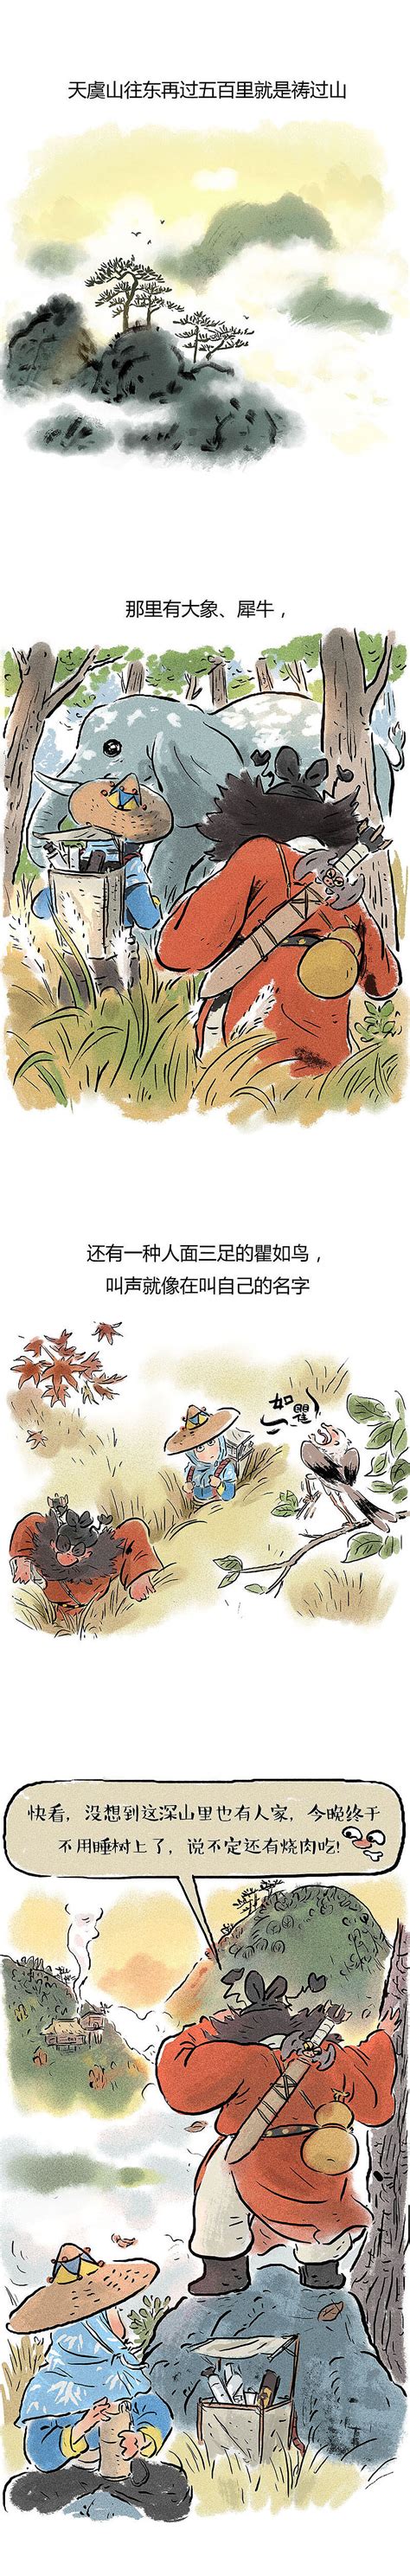 《青丘狐传说》手游官网-盛夏狂欢跨服战 领百元钻石